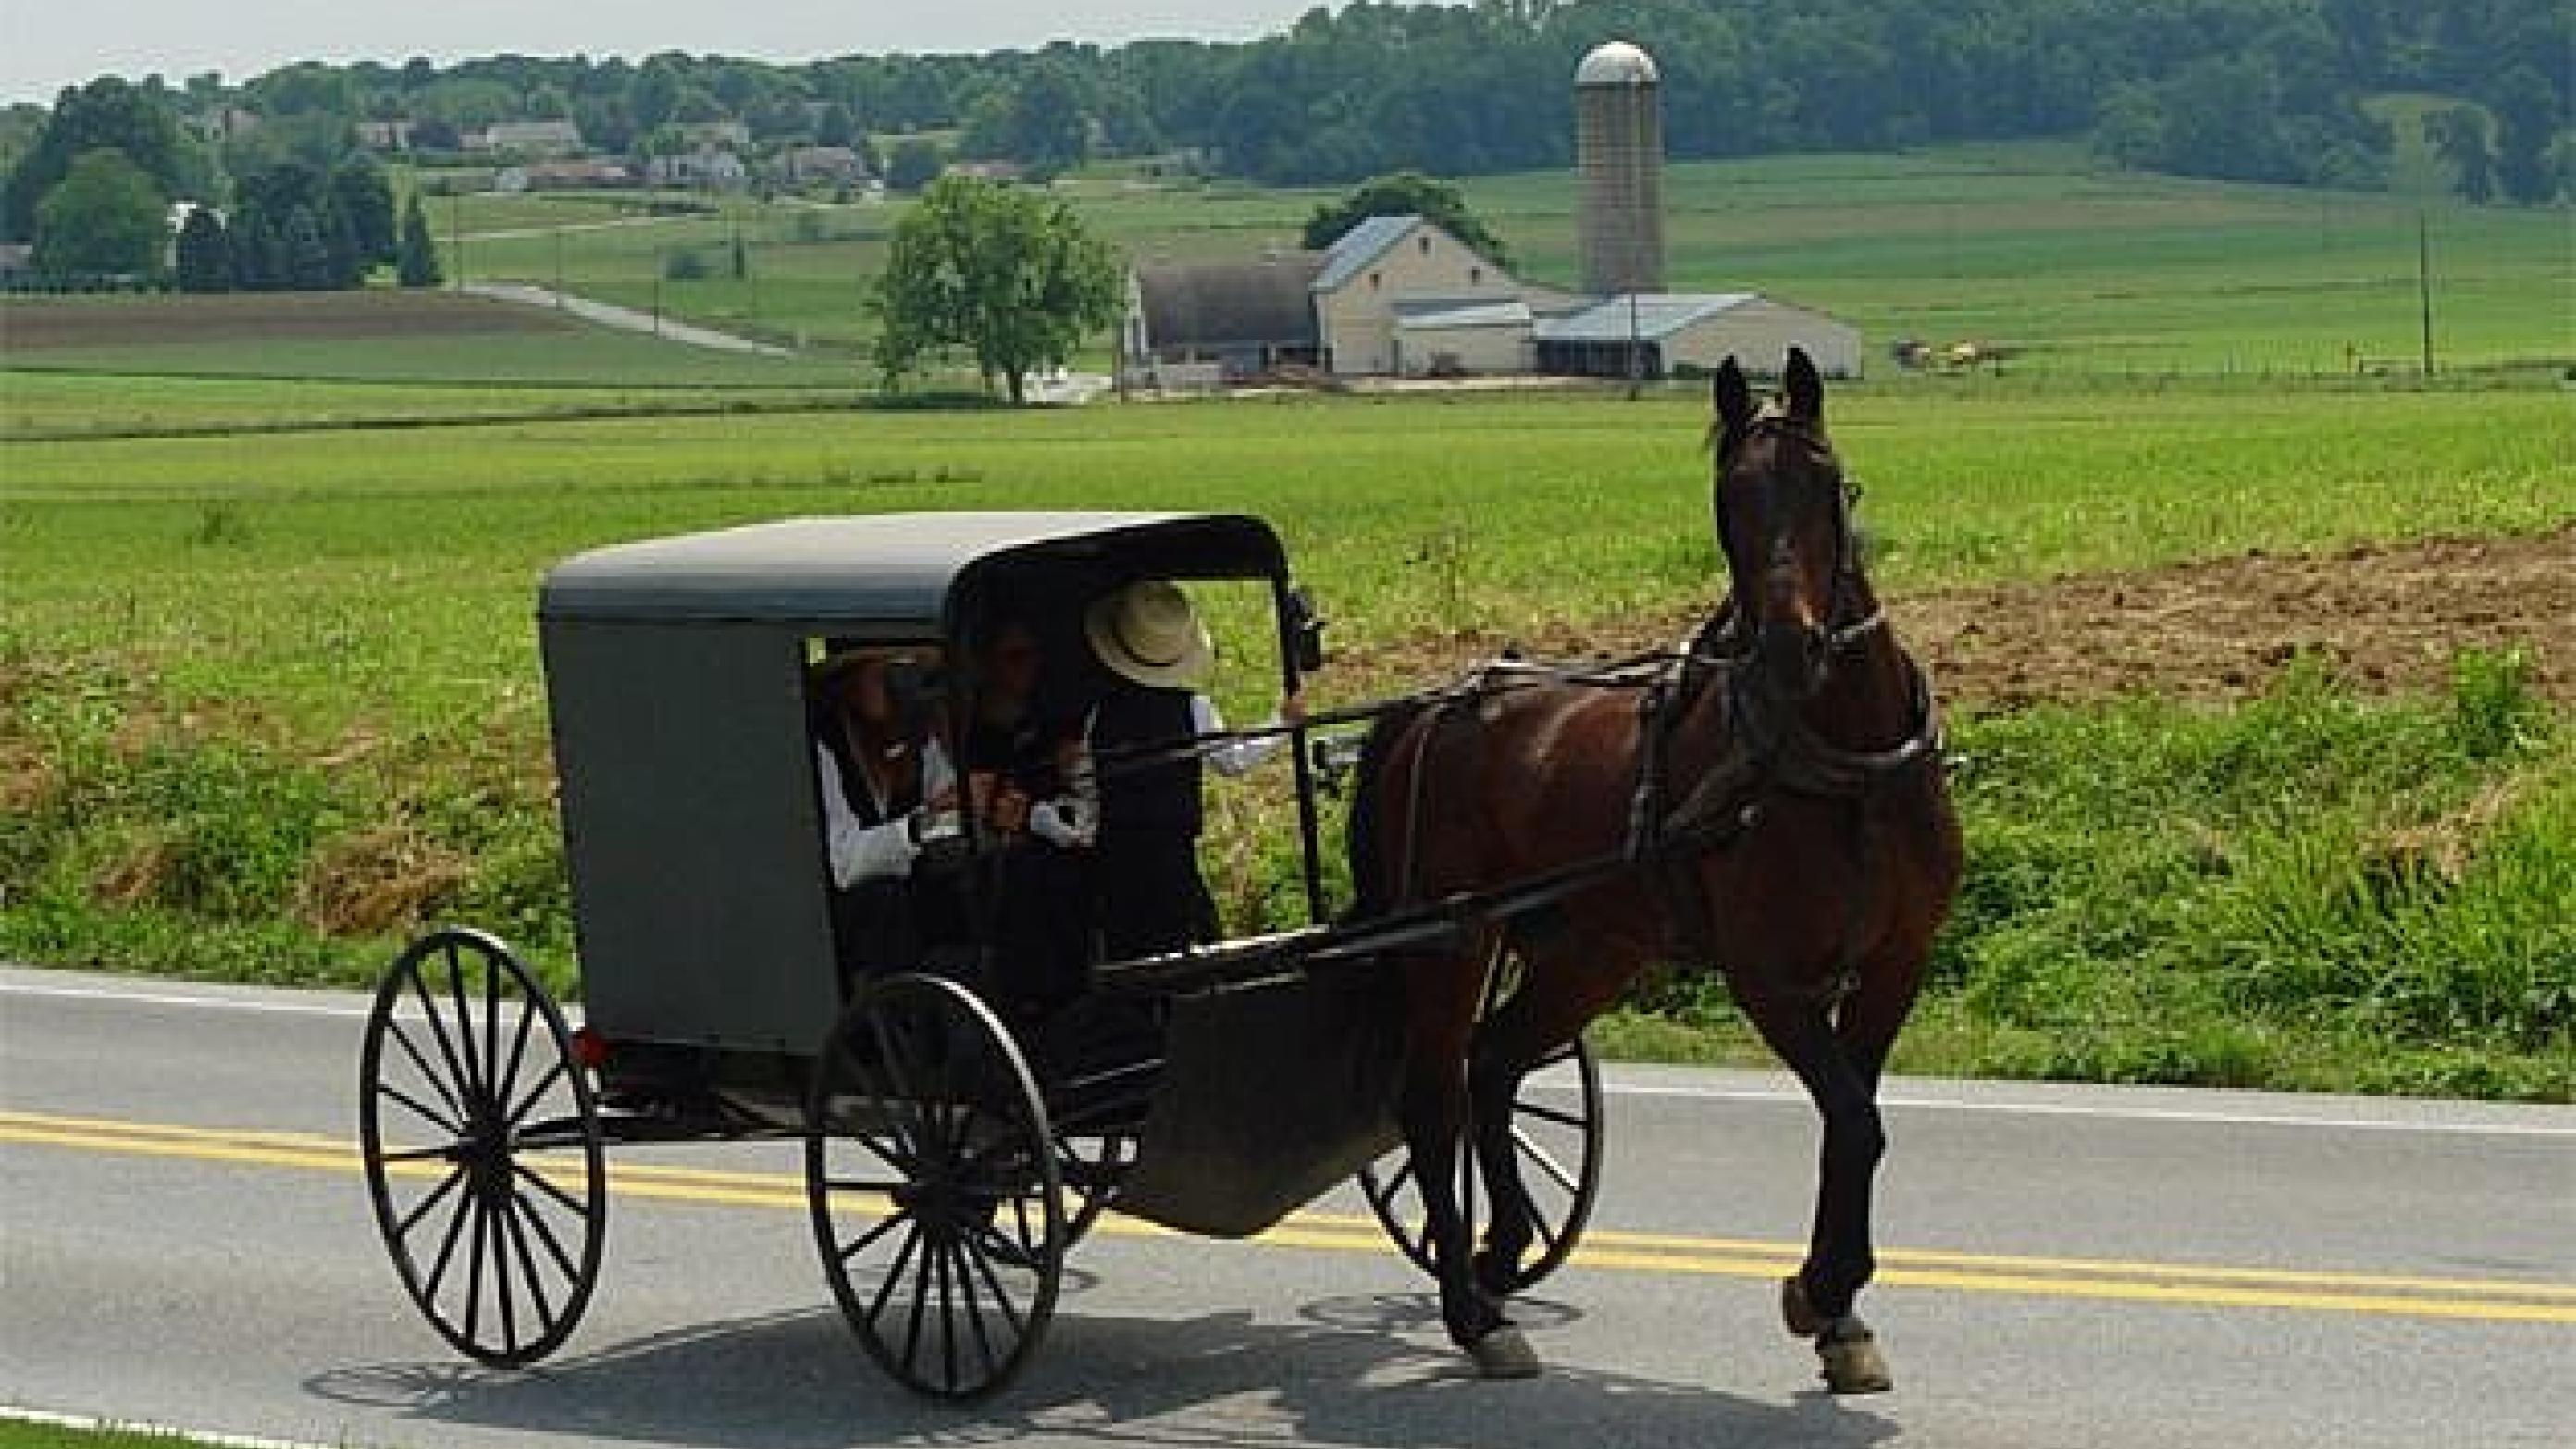 Amish-folket er en protestantisk kristen gruppe, der giver afkald på moderne teknologi. Foto: Wikipidia